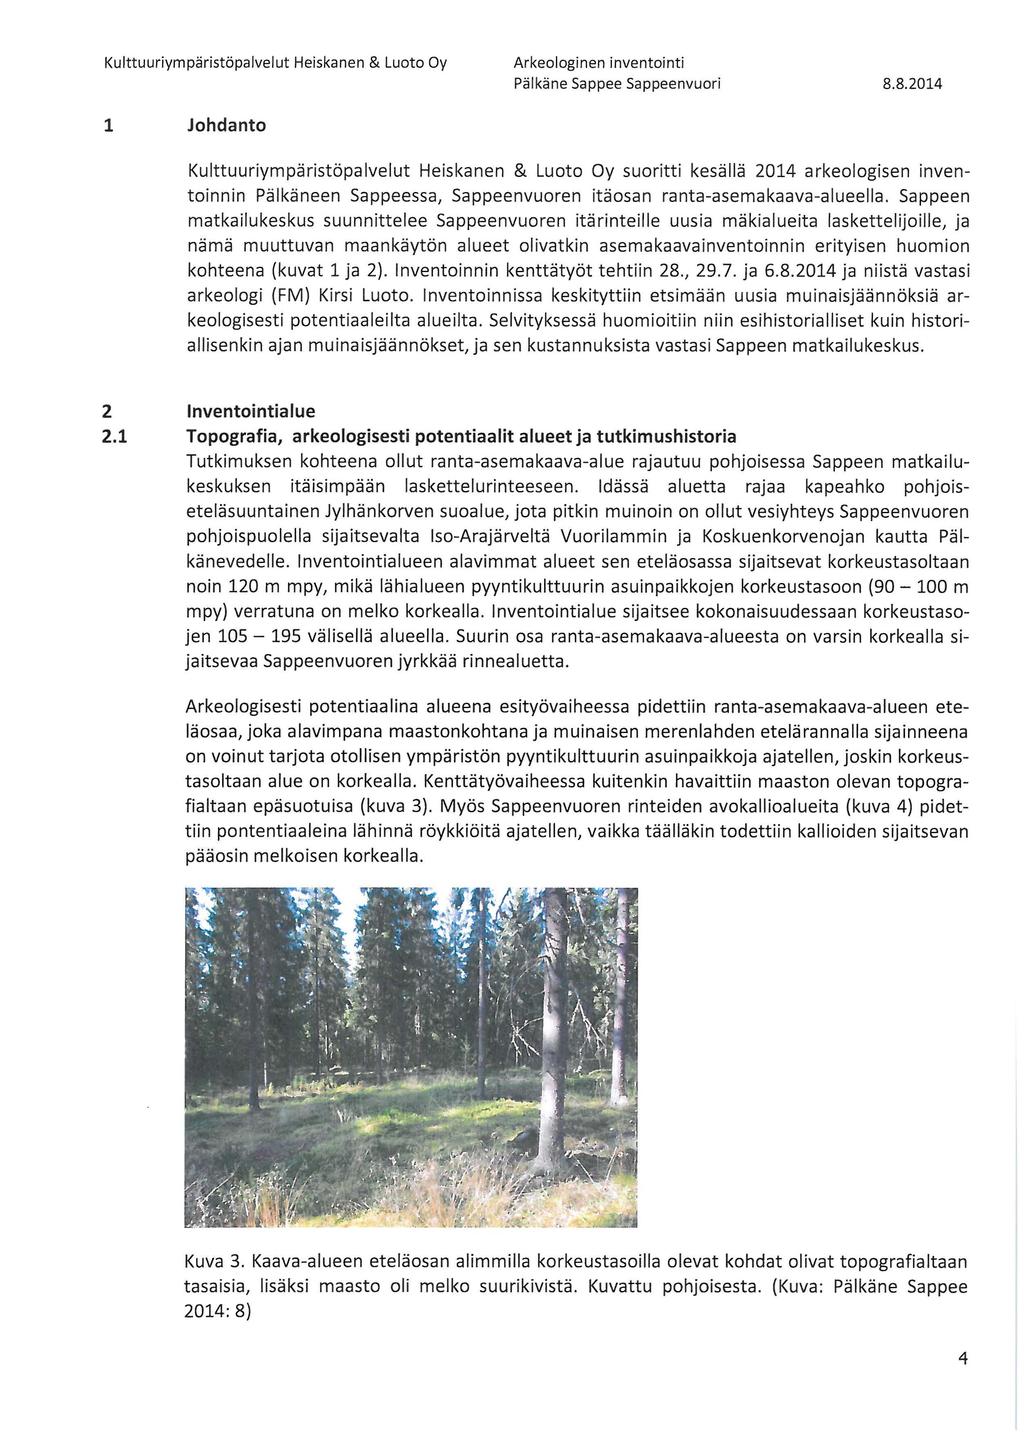 1 Johdanto Kulttuuriympäristöpalvelut Heiskanen & Luoto Oy suoritti kesällä 2014 arkeologisen inventoinnin Pälkäneen Sappeessa, Sappeenvuoren itäosan ranta-asemakaava-alueella.